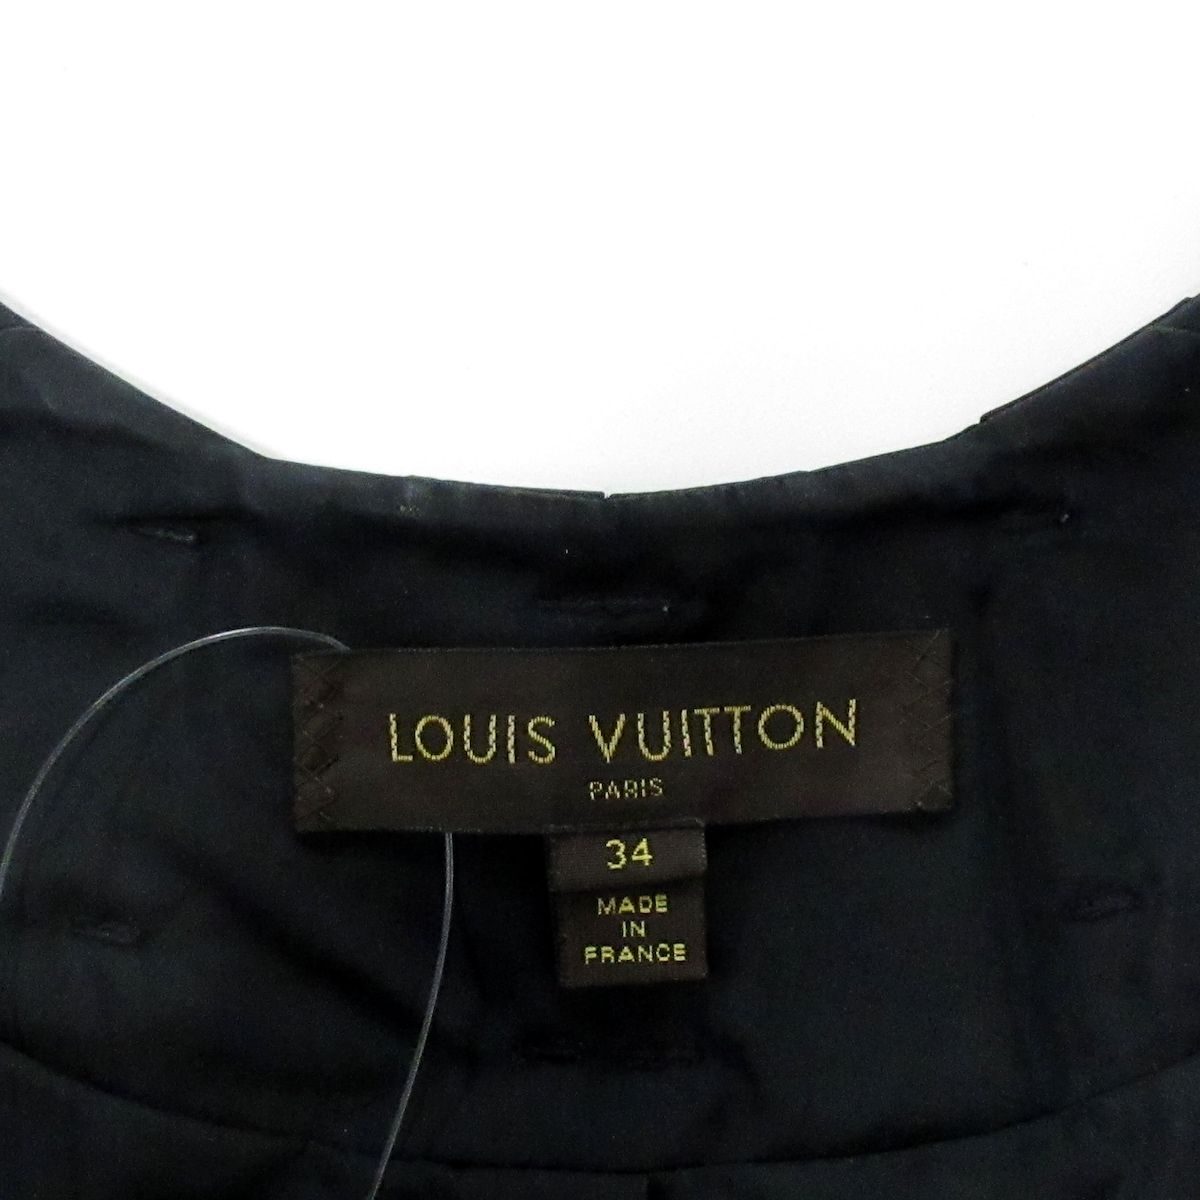 LOUIS VUITTON(ルイヴィトン) トレンチコート サイズ34 S レディース - 黒 長袖